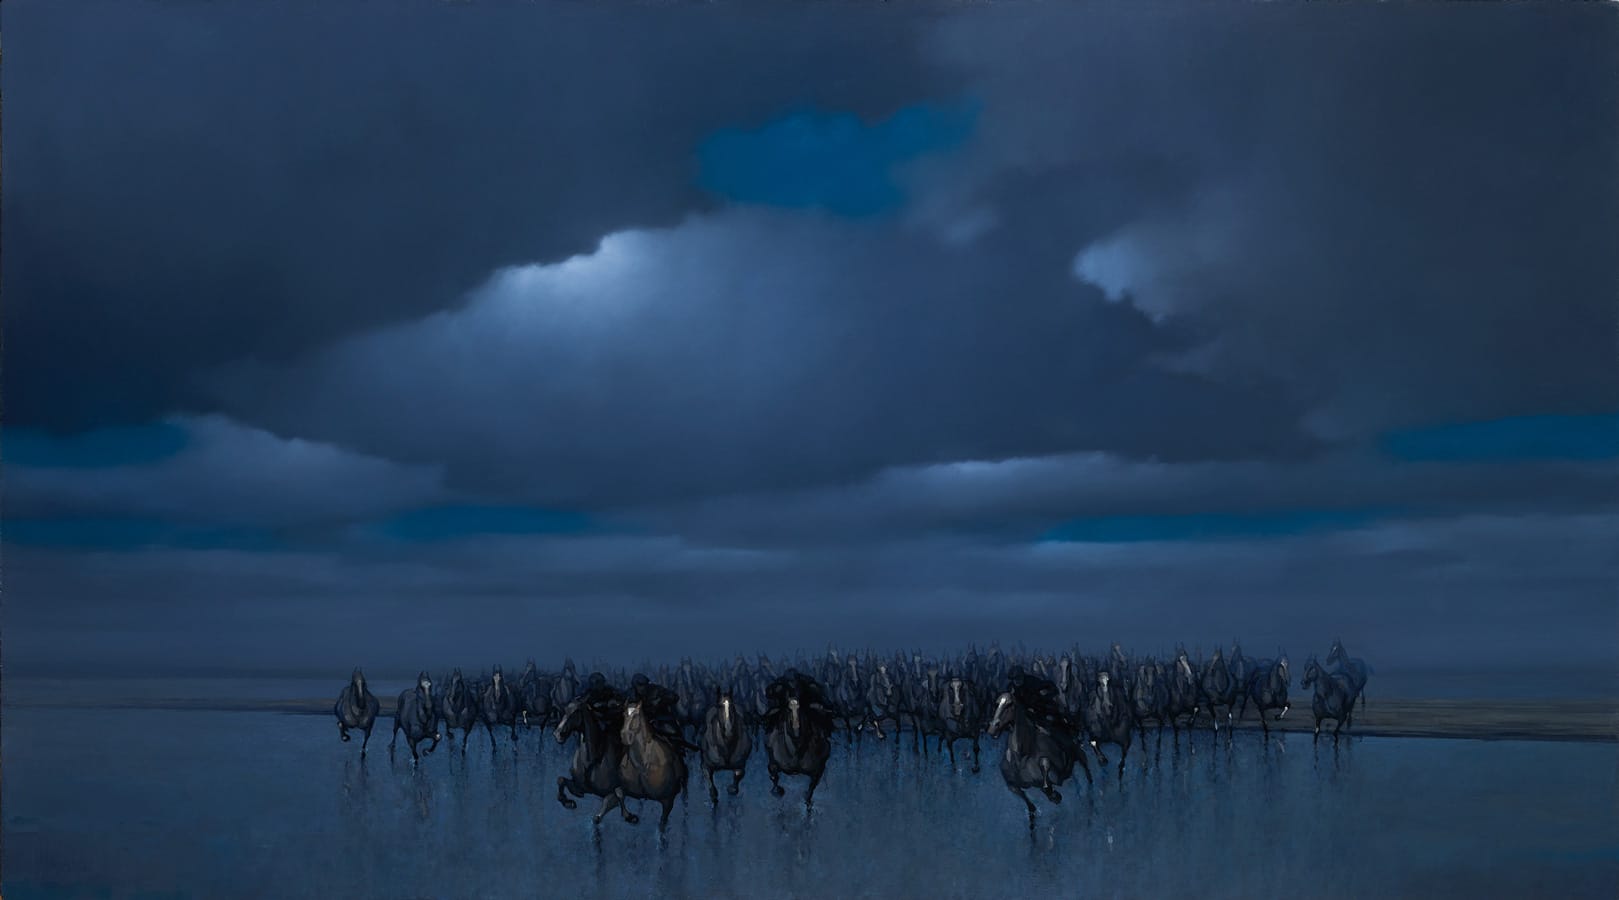 Bevrijding van de paarden van Marrum (90 x 50), Harry Koster 2019